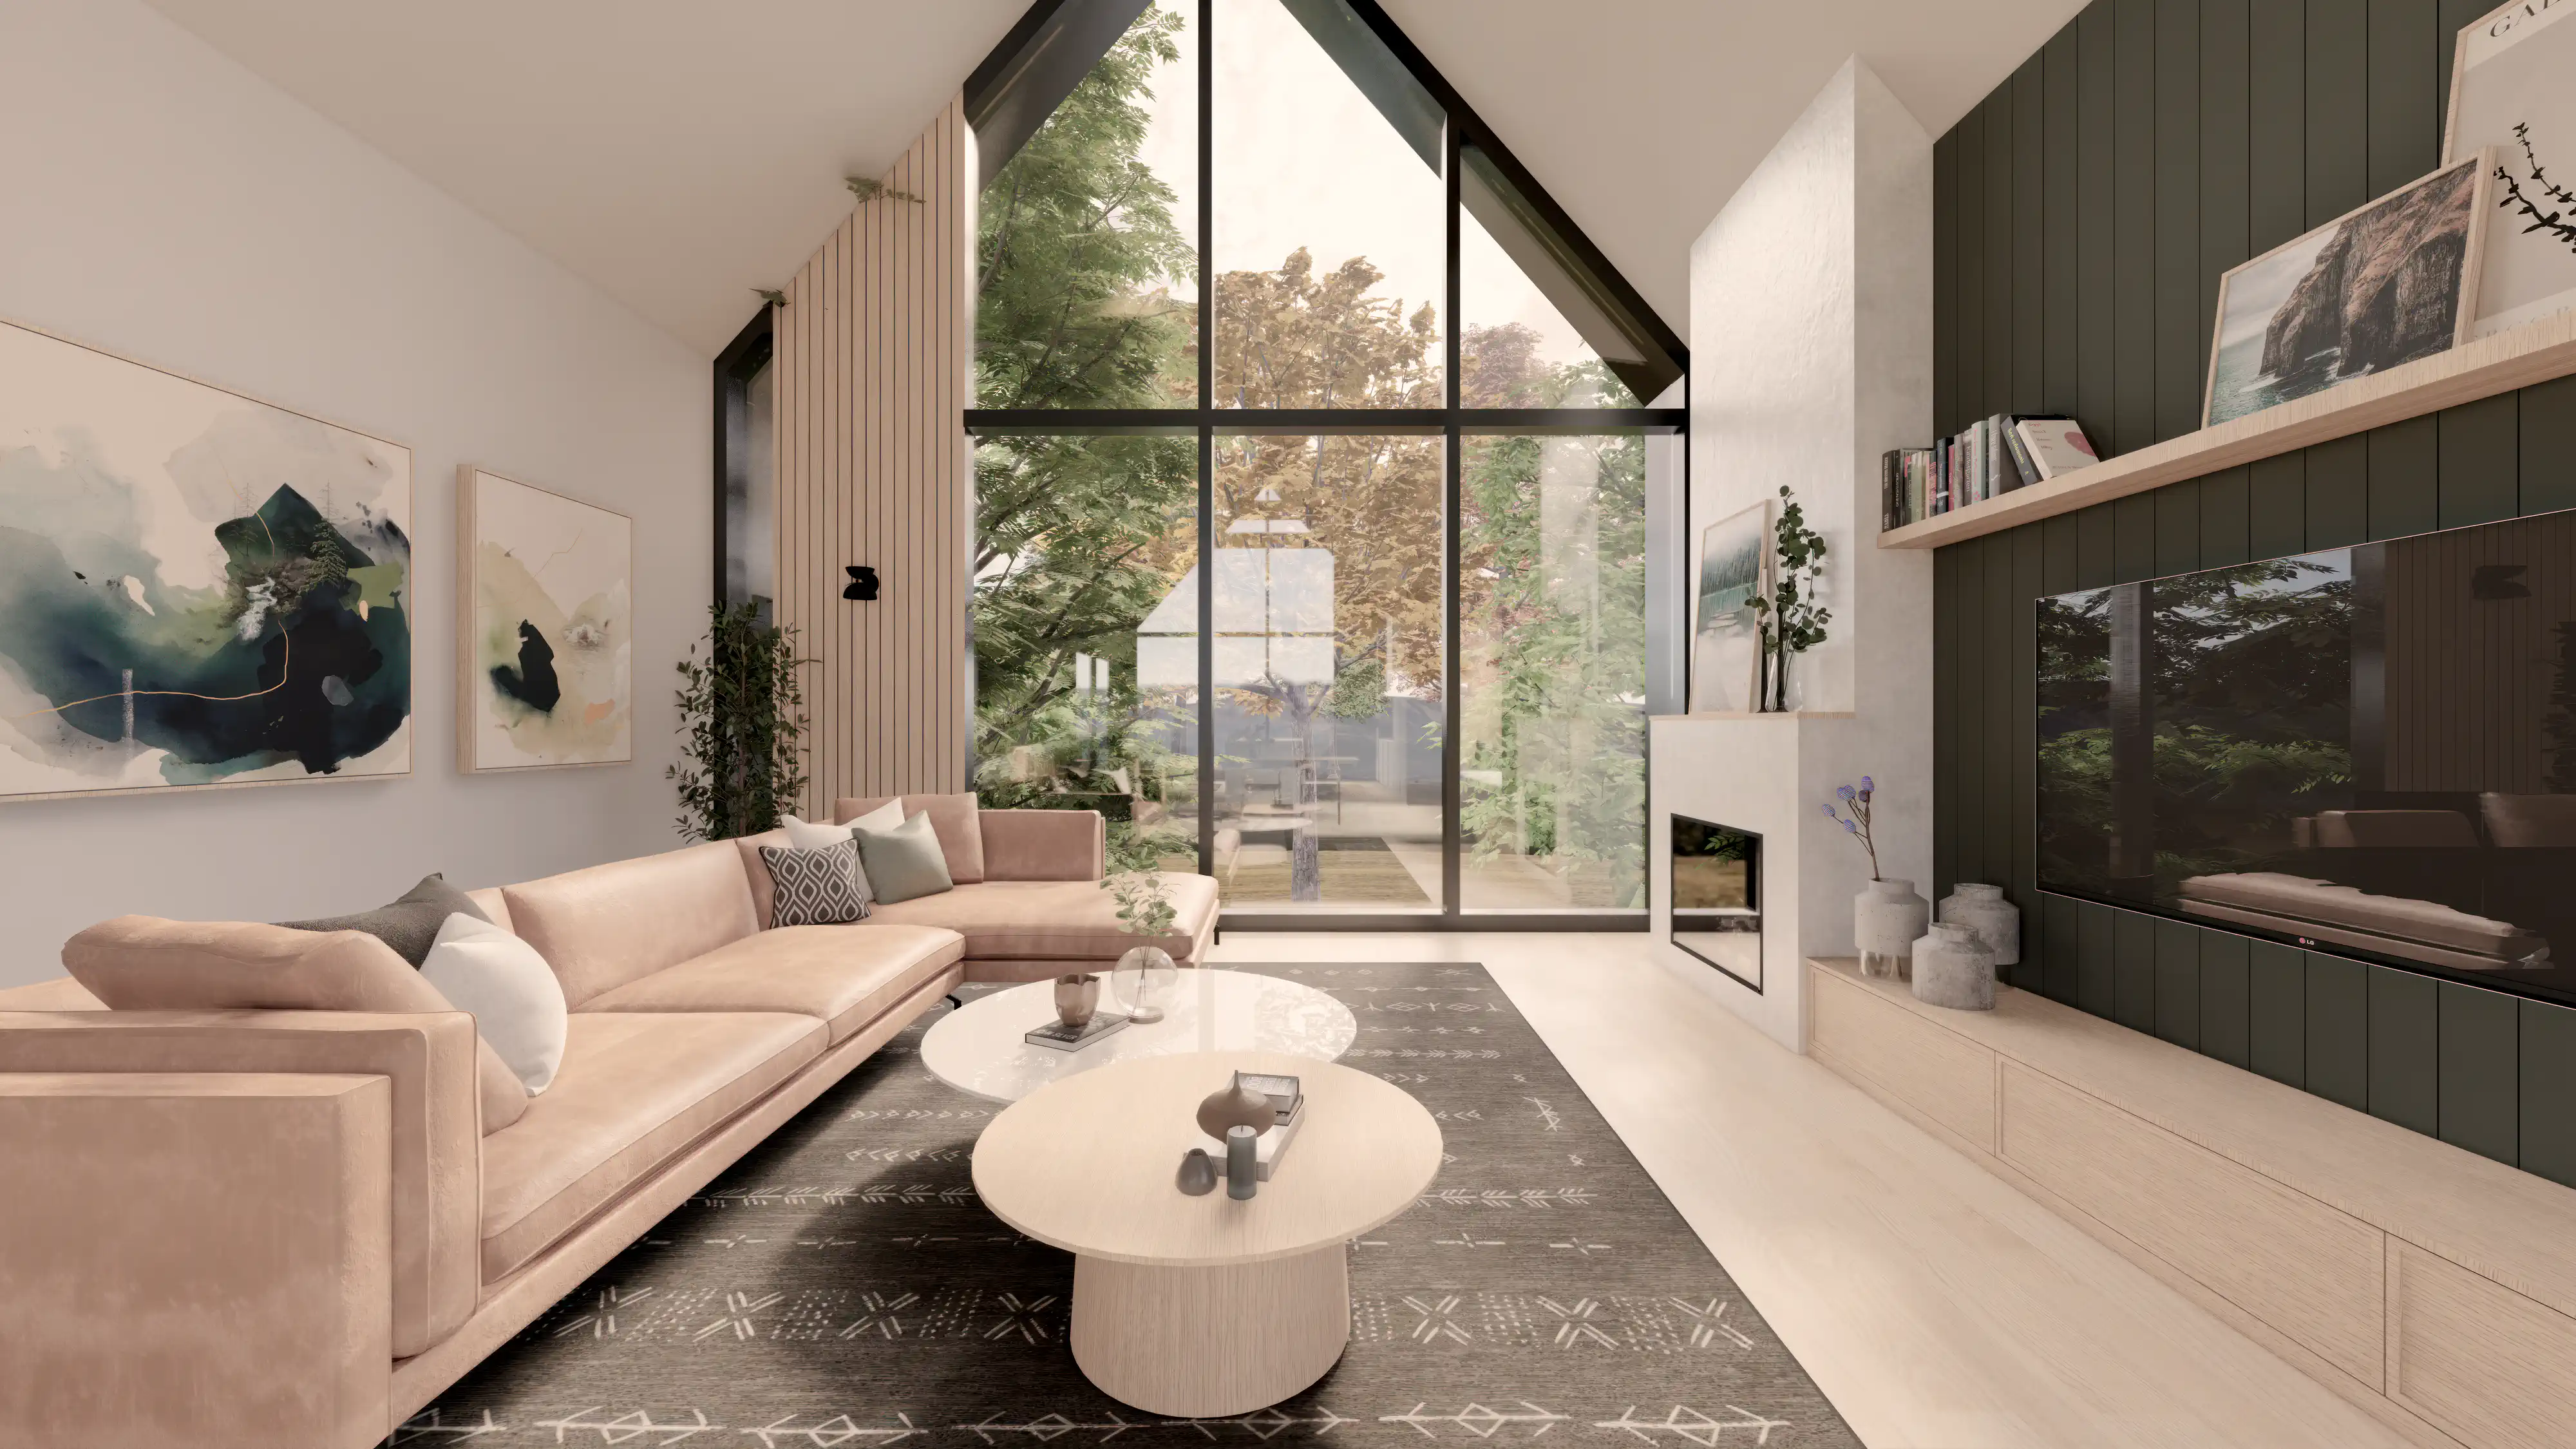 Design de salon moderne avec un canapé beige, des peintures abstraites et une vue panoramique à travers de grandes fenêtres, intérieur signé Sarah Brown Design